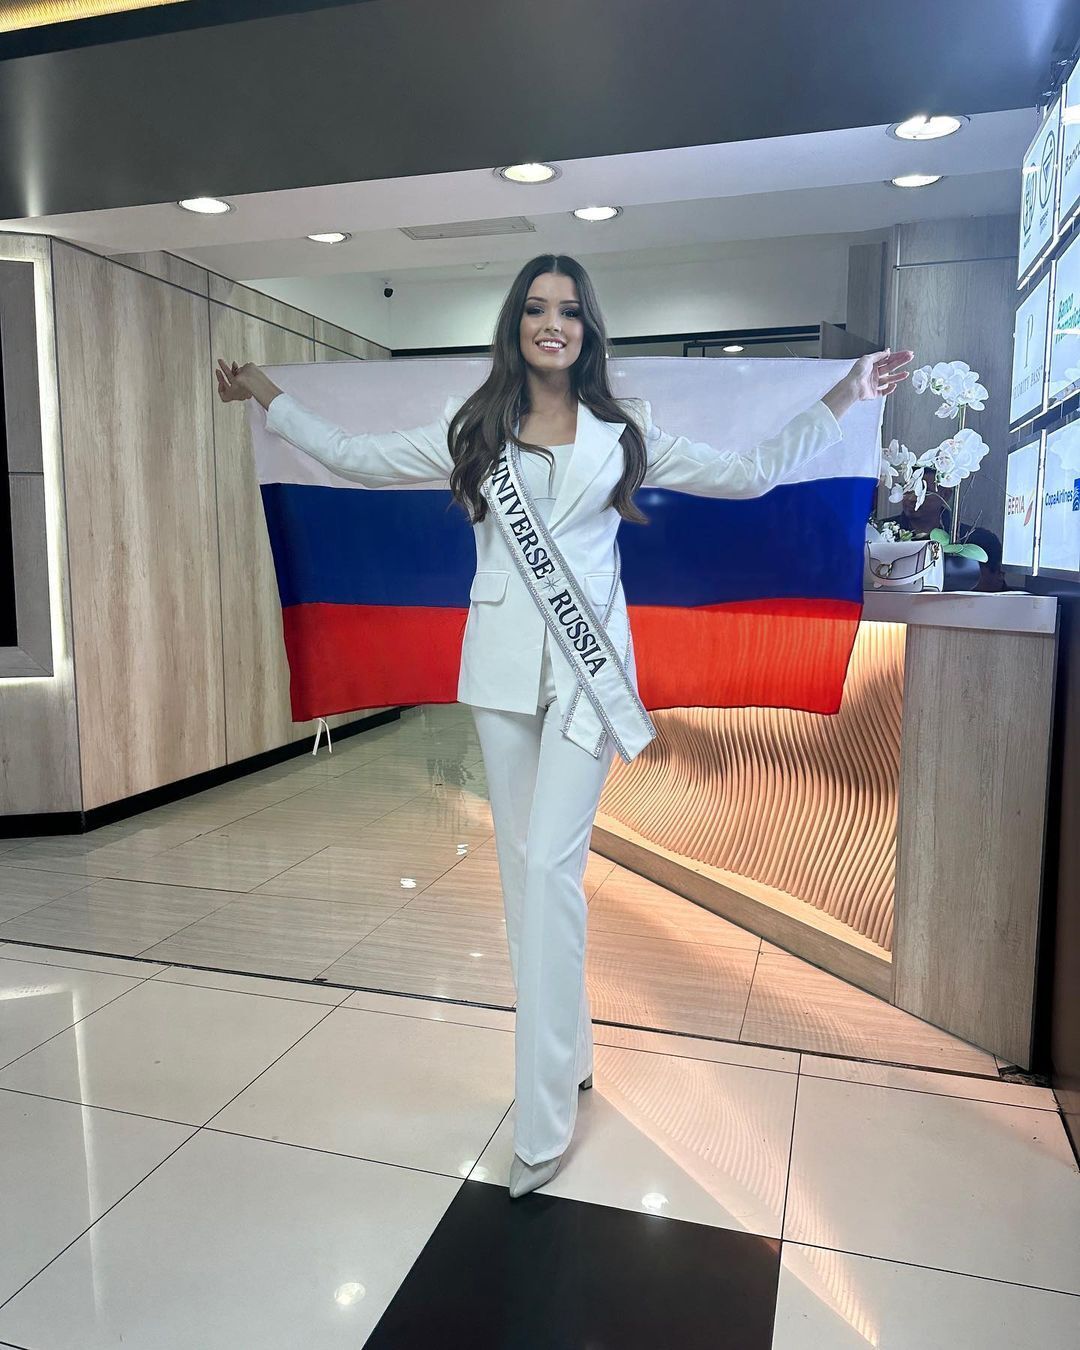 "Мисс Вселенная Украина" Ангелина Усанова прокомментировала отношения с участницей от России: они сидели за одним столом